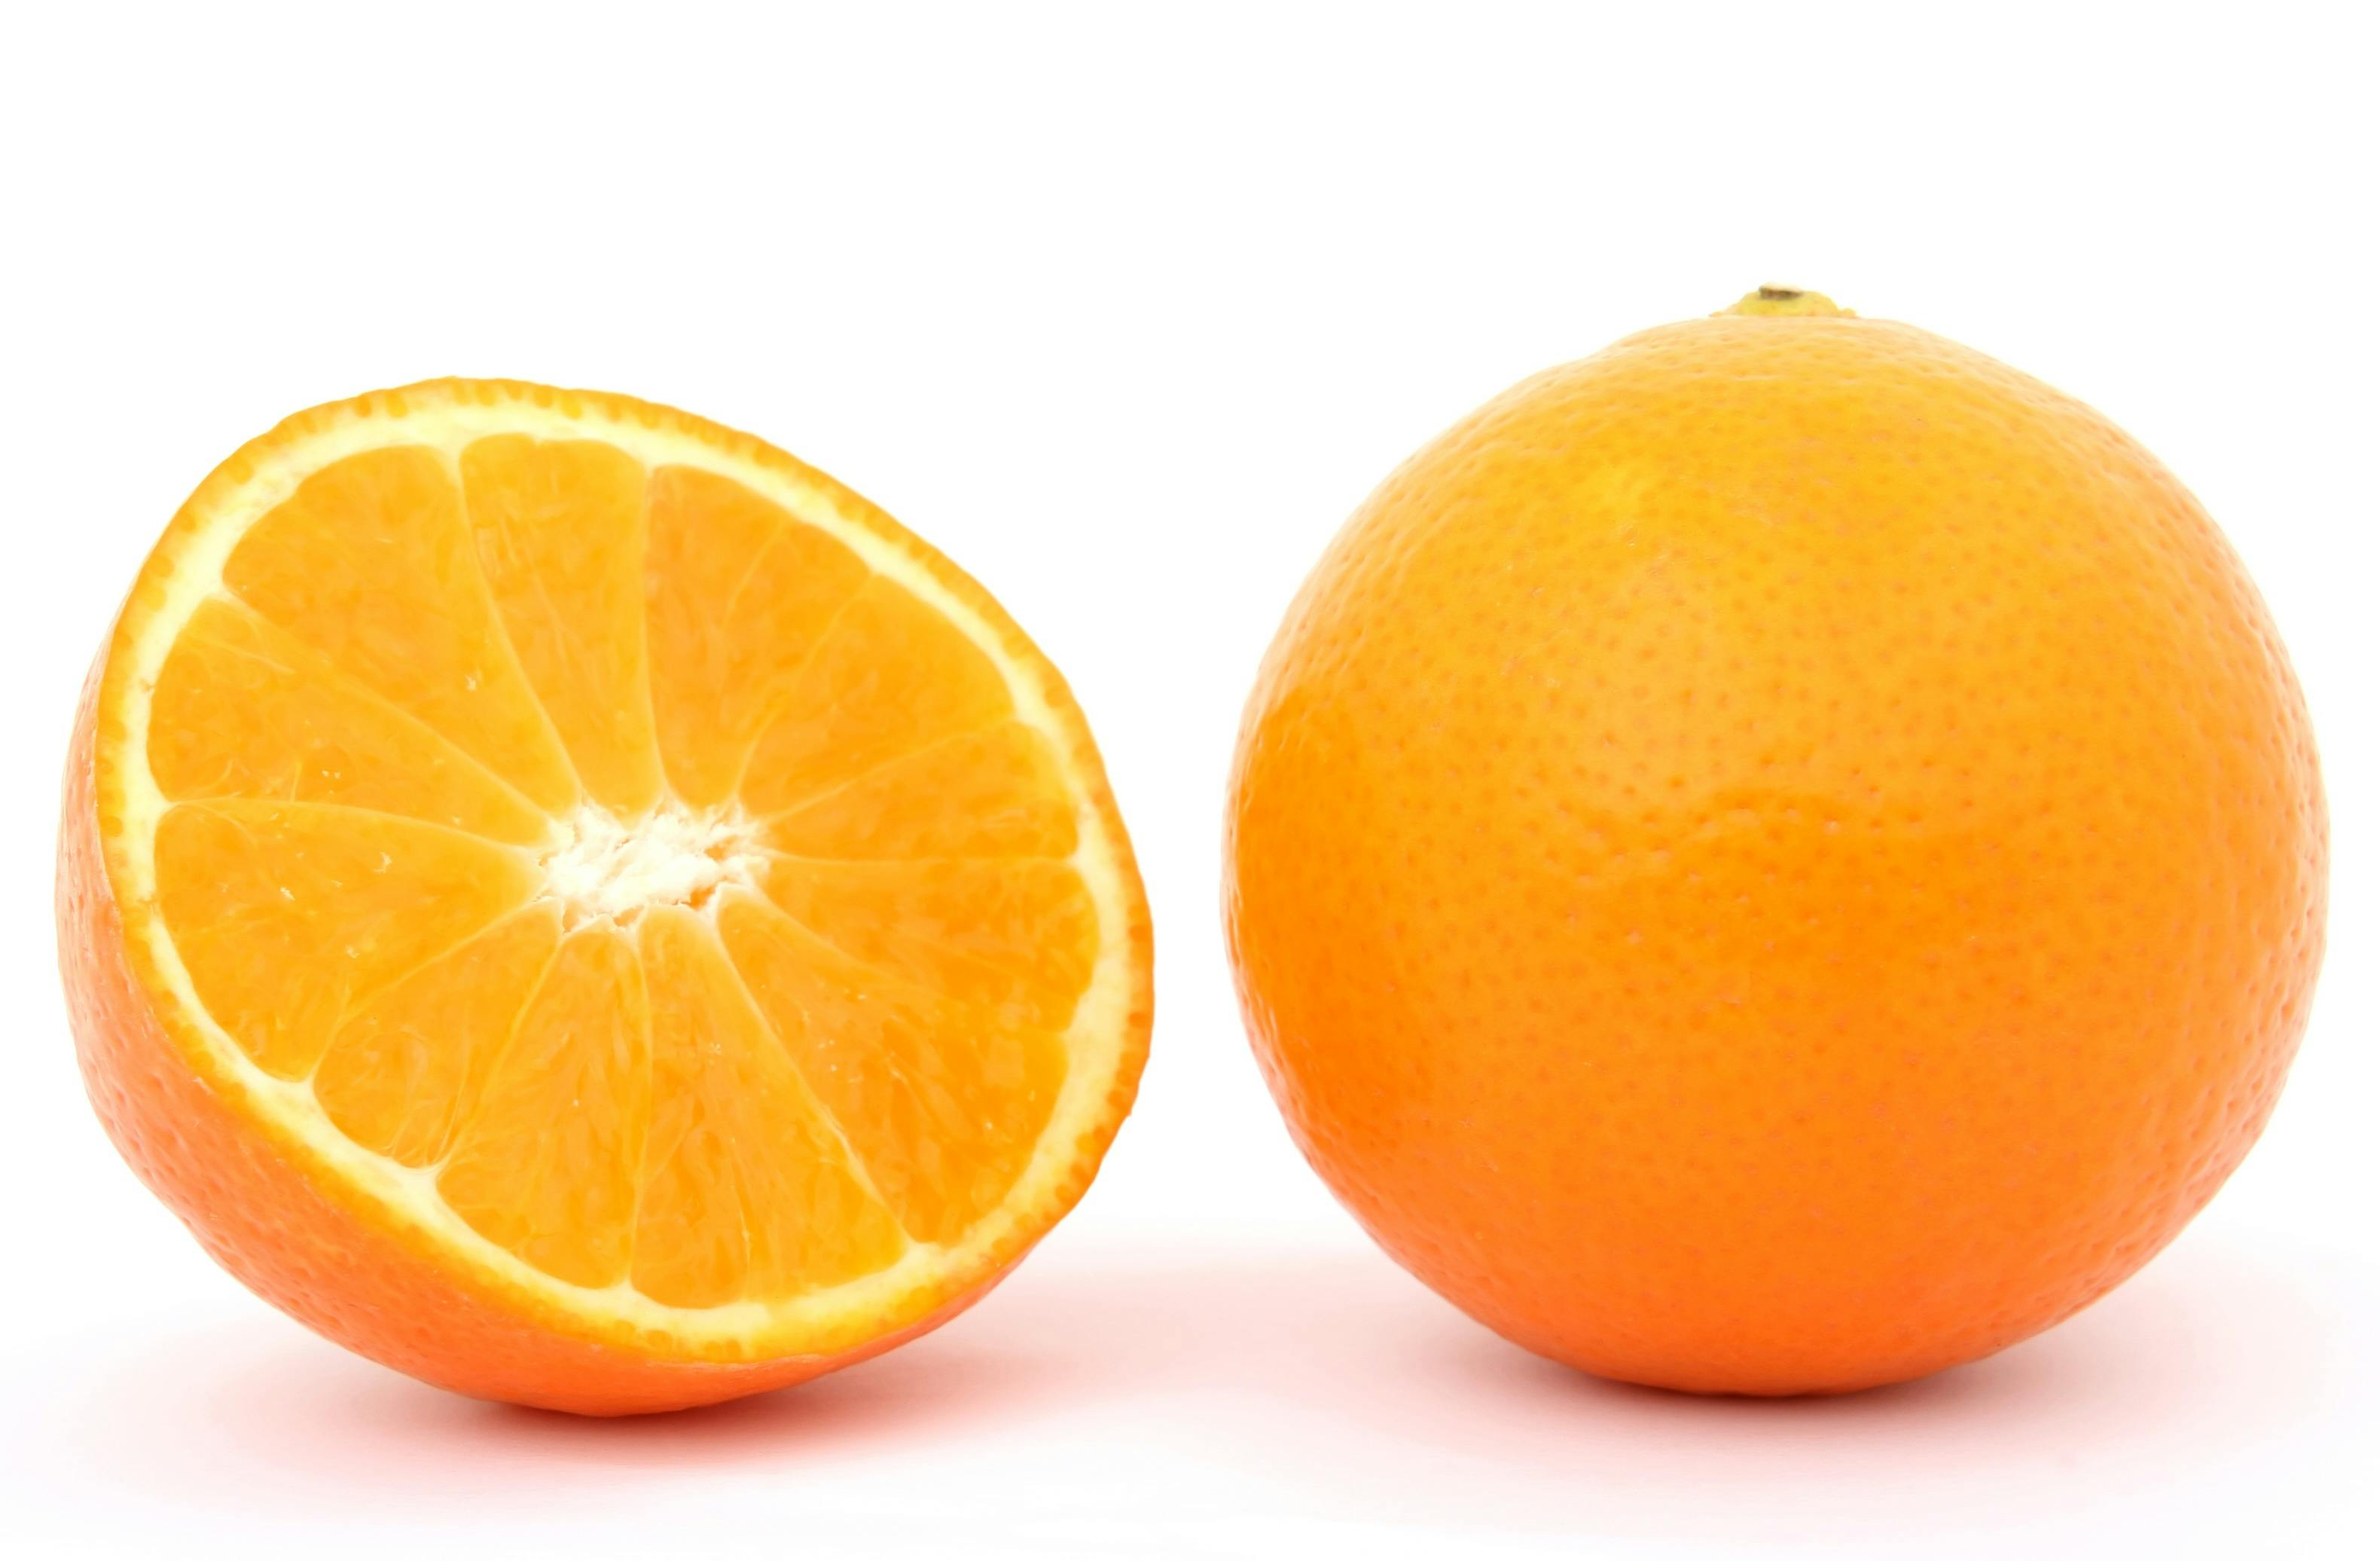  Orange  Fruit   Free Stock Photo